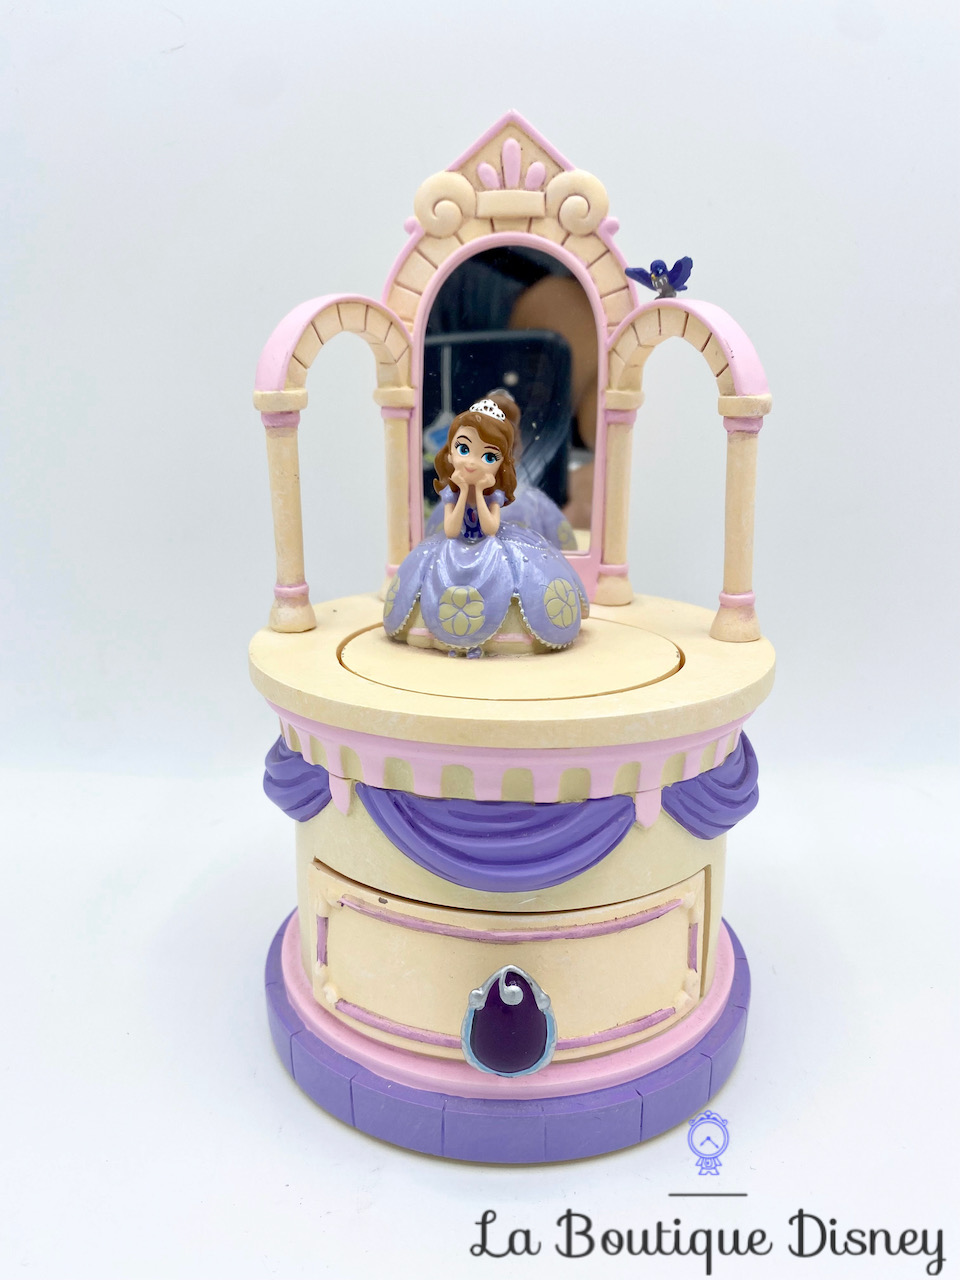 boite-bijoux-princesse-sofia-disney-store-résine-oiseau-miroir-violet-0